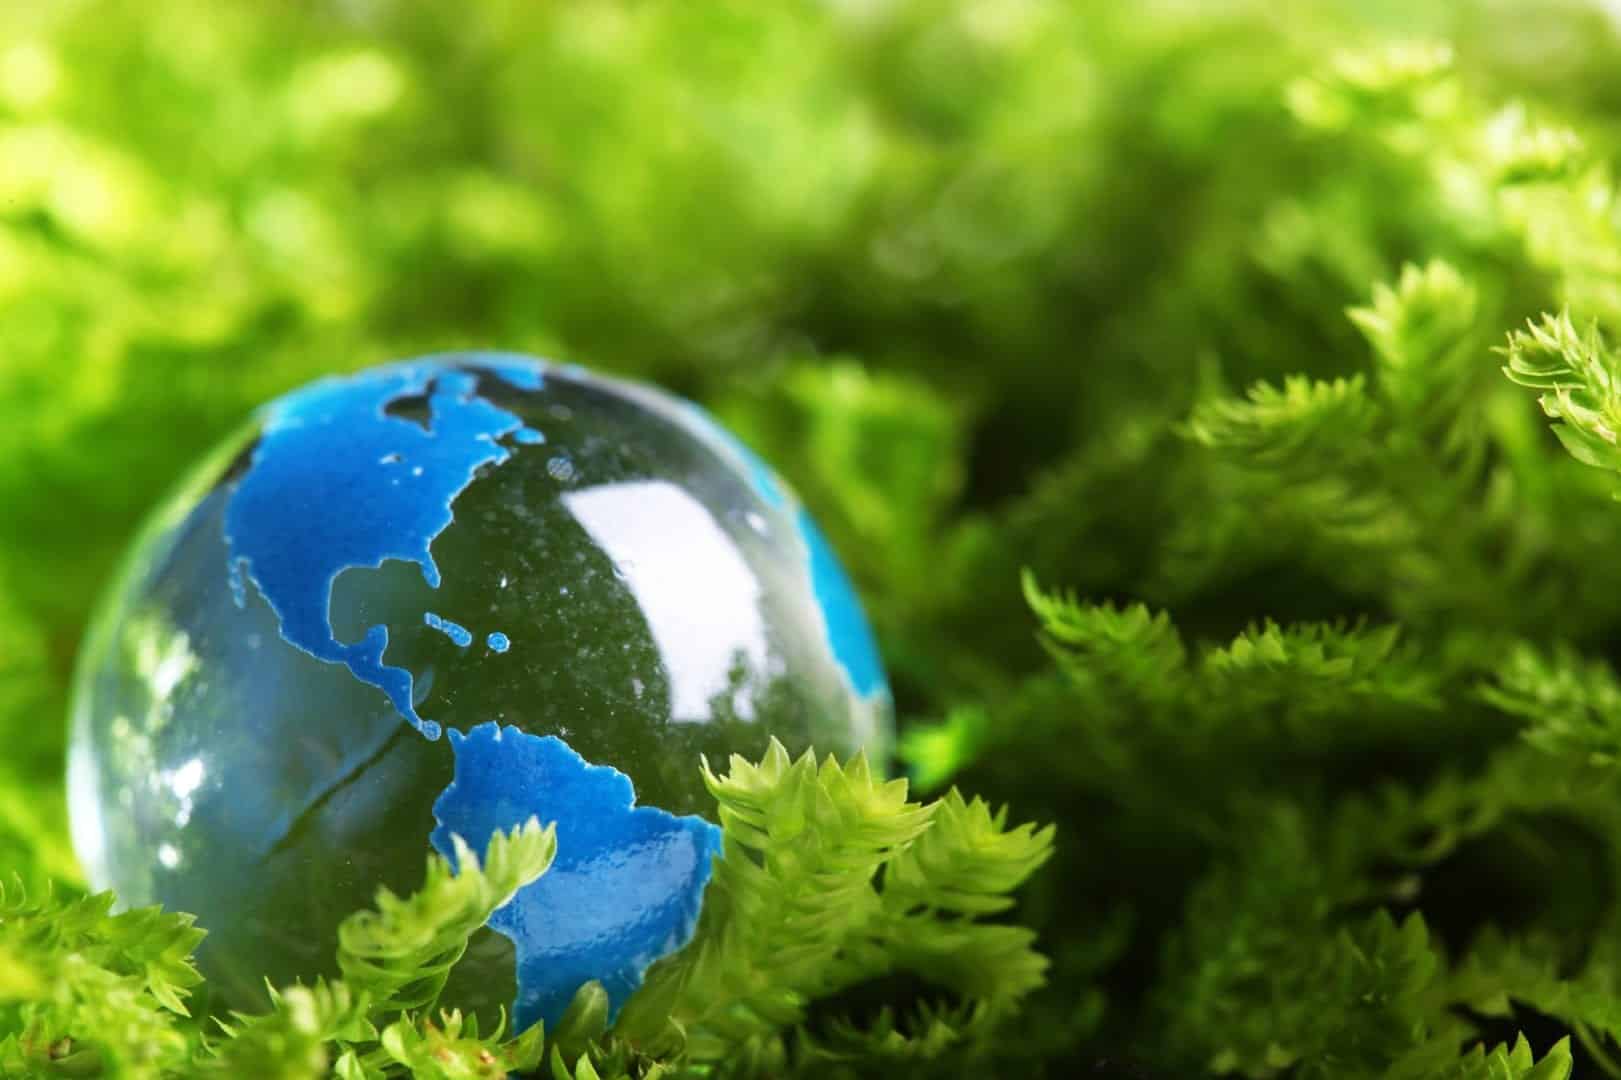 O Desenvolvimento Sustentável visa conter os impactos ambientais